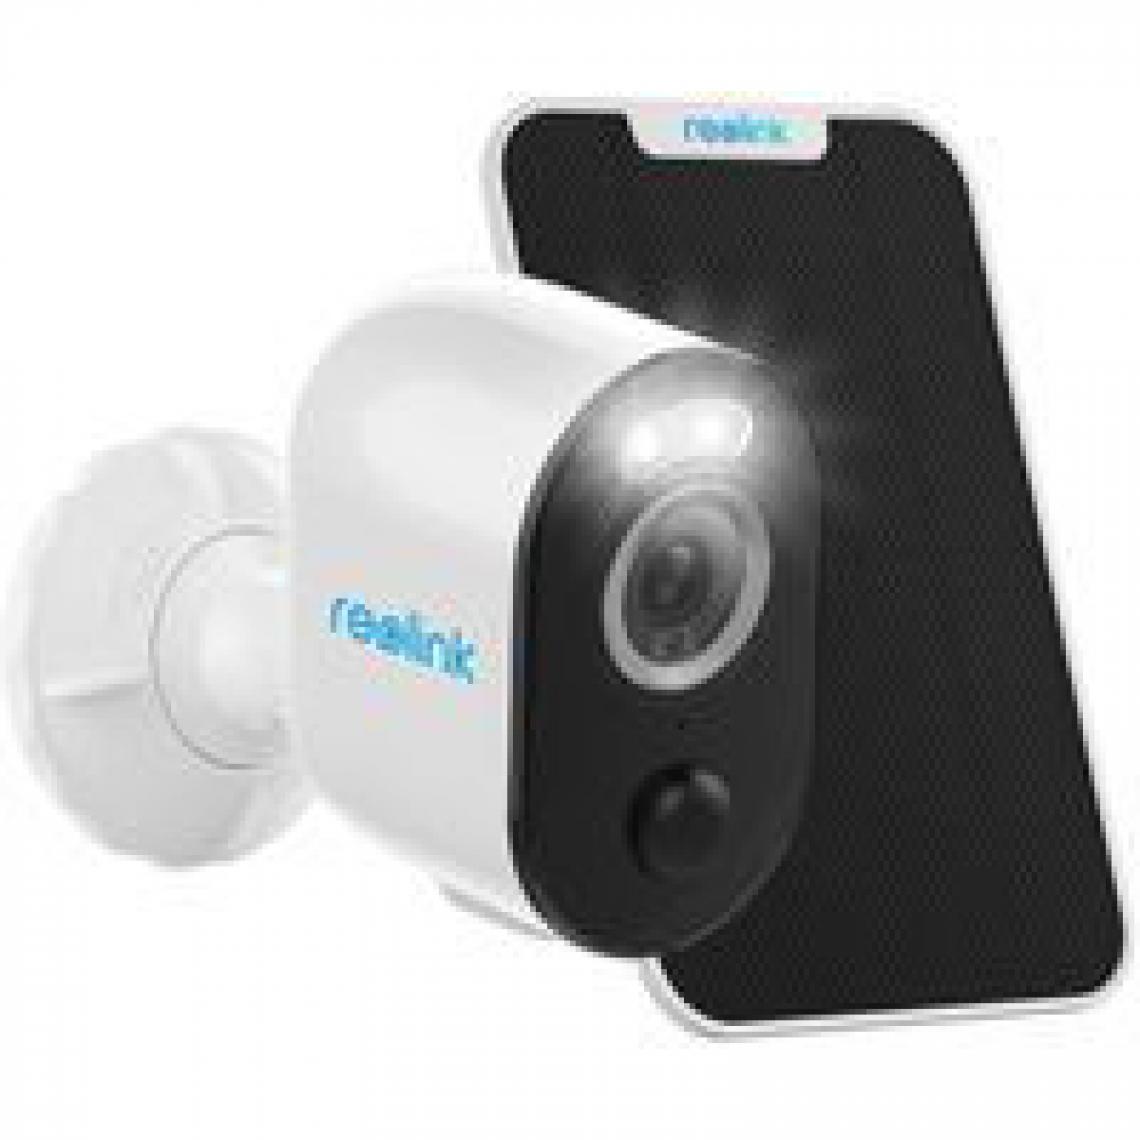 Reolink - 4MP Caméra Surveillance WiFi - Argus 3 Pro+Panneau Solaire- Caméra Extérieure Solaire sans Fil sur Batterie avec Projecteur LED - Caméra de surveillance connectée